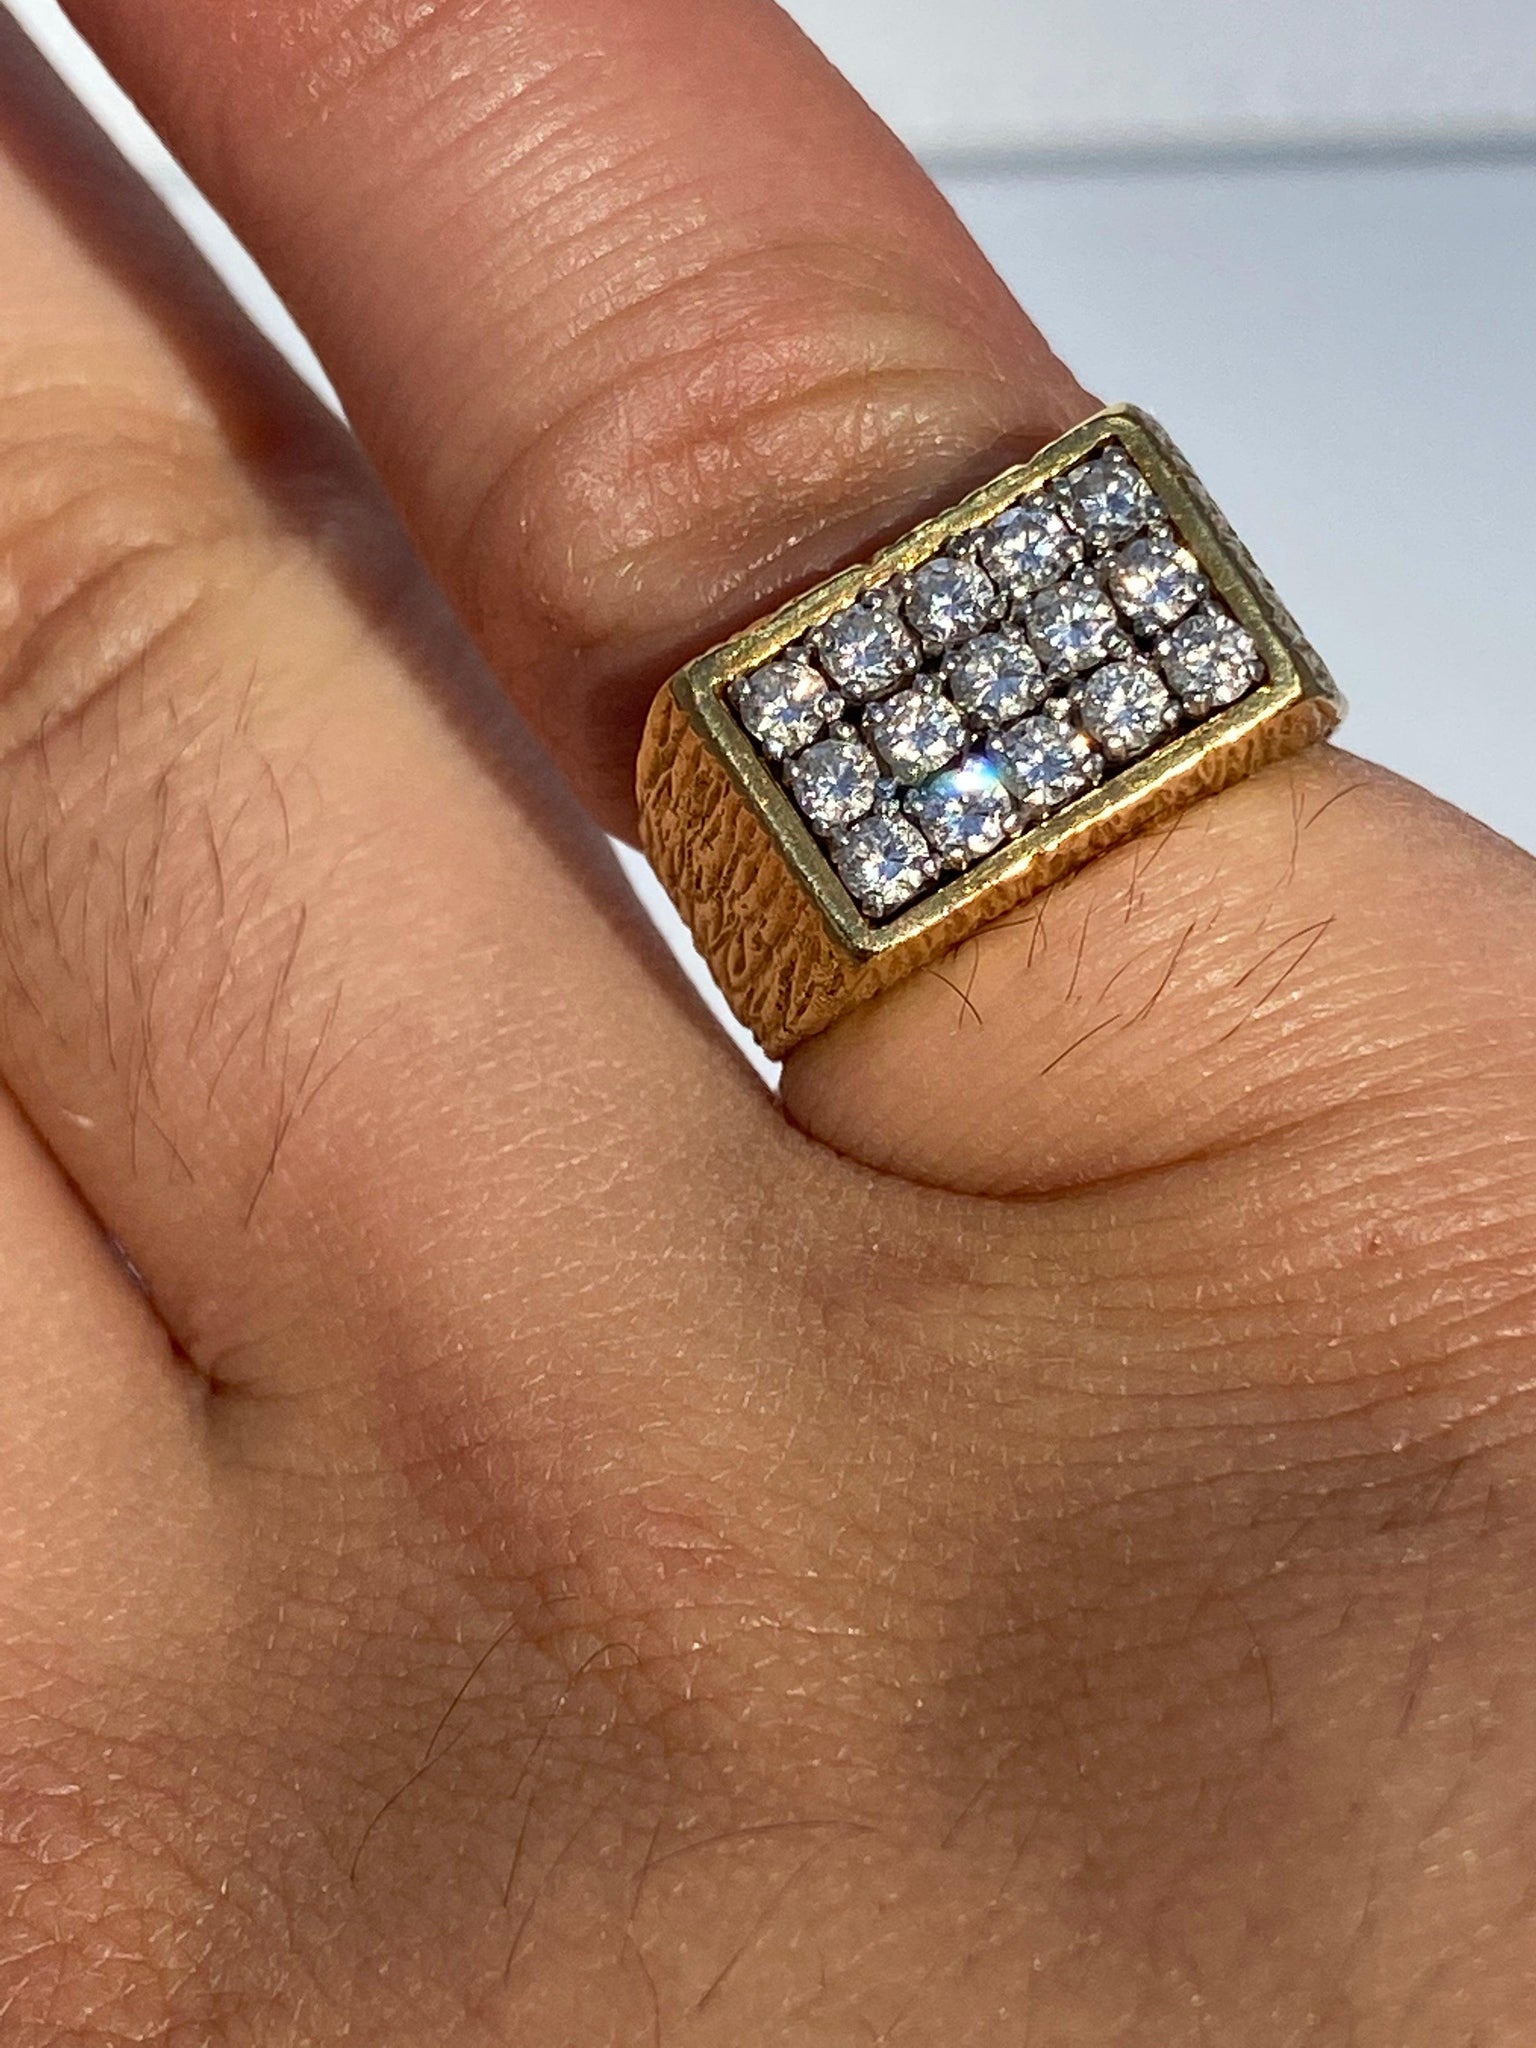 6.5mm Round Moissanite Diamond Antique Men's Ring from Black Diamonds New  York